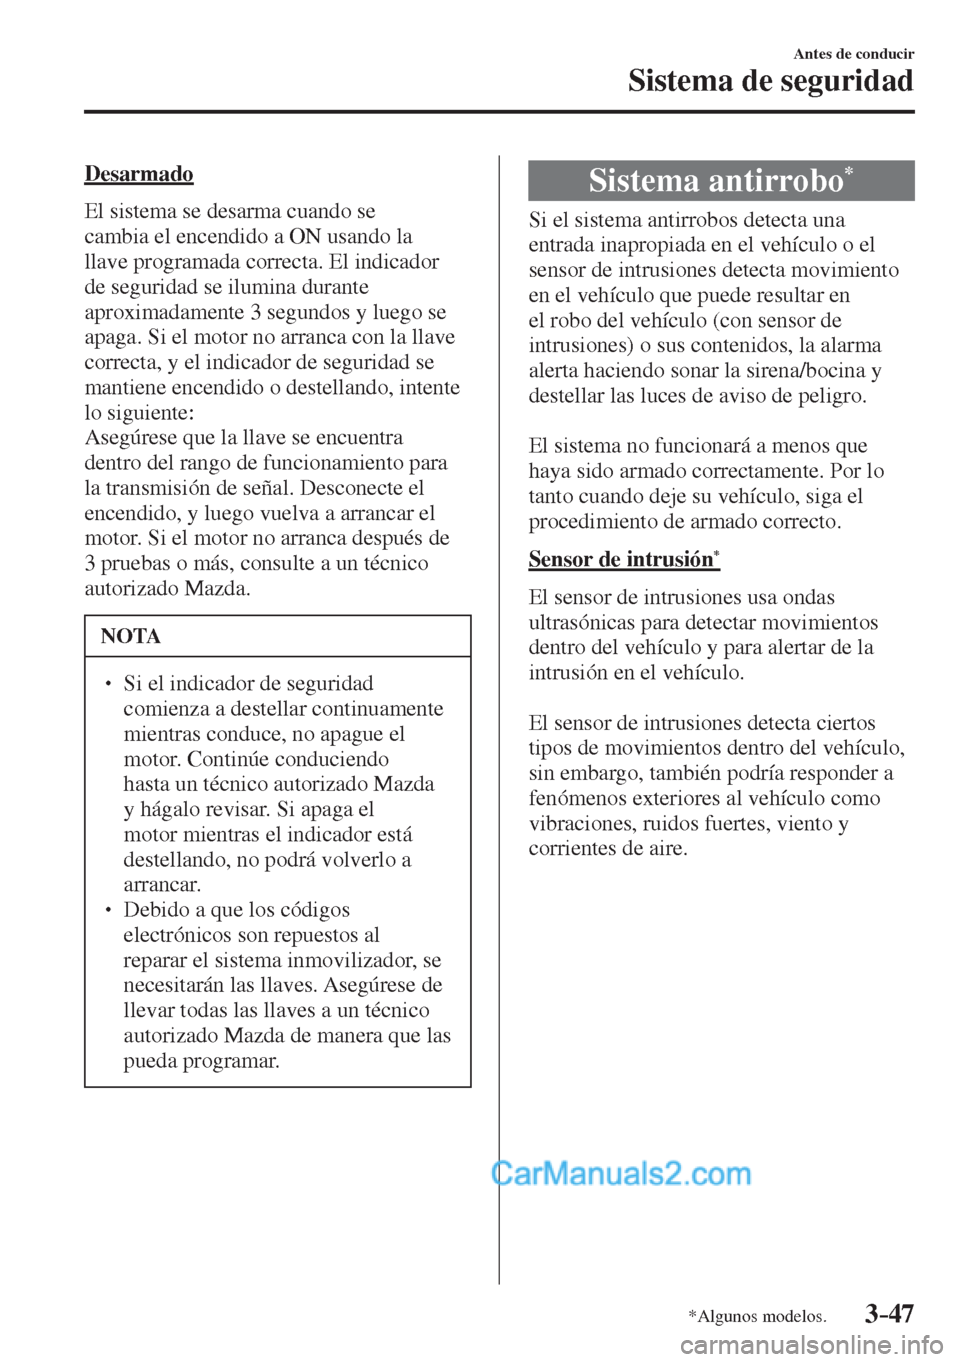 MAZDA MODEL 2 2017  Manual del propietario (in Spanish) 3–47
Antes de conducir
Sistema de seguridad
*Algunos modelos.
  Desarmado
    El sistema se desarma cuando se 
cambia el encendido a ON usando la 
llave programada correcta. El indicador 
de segurid